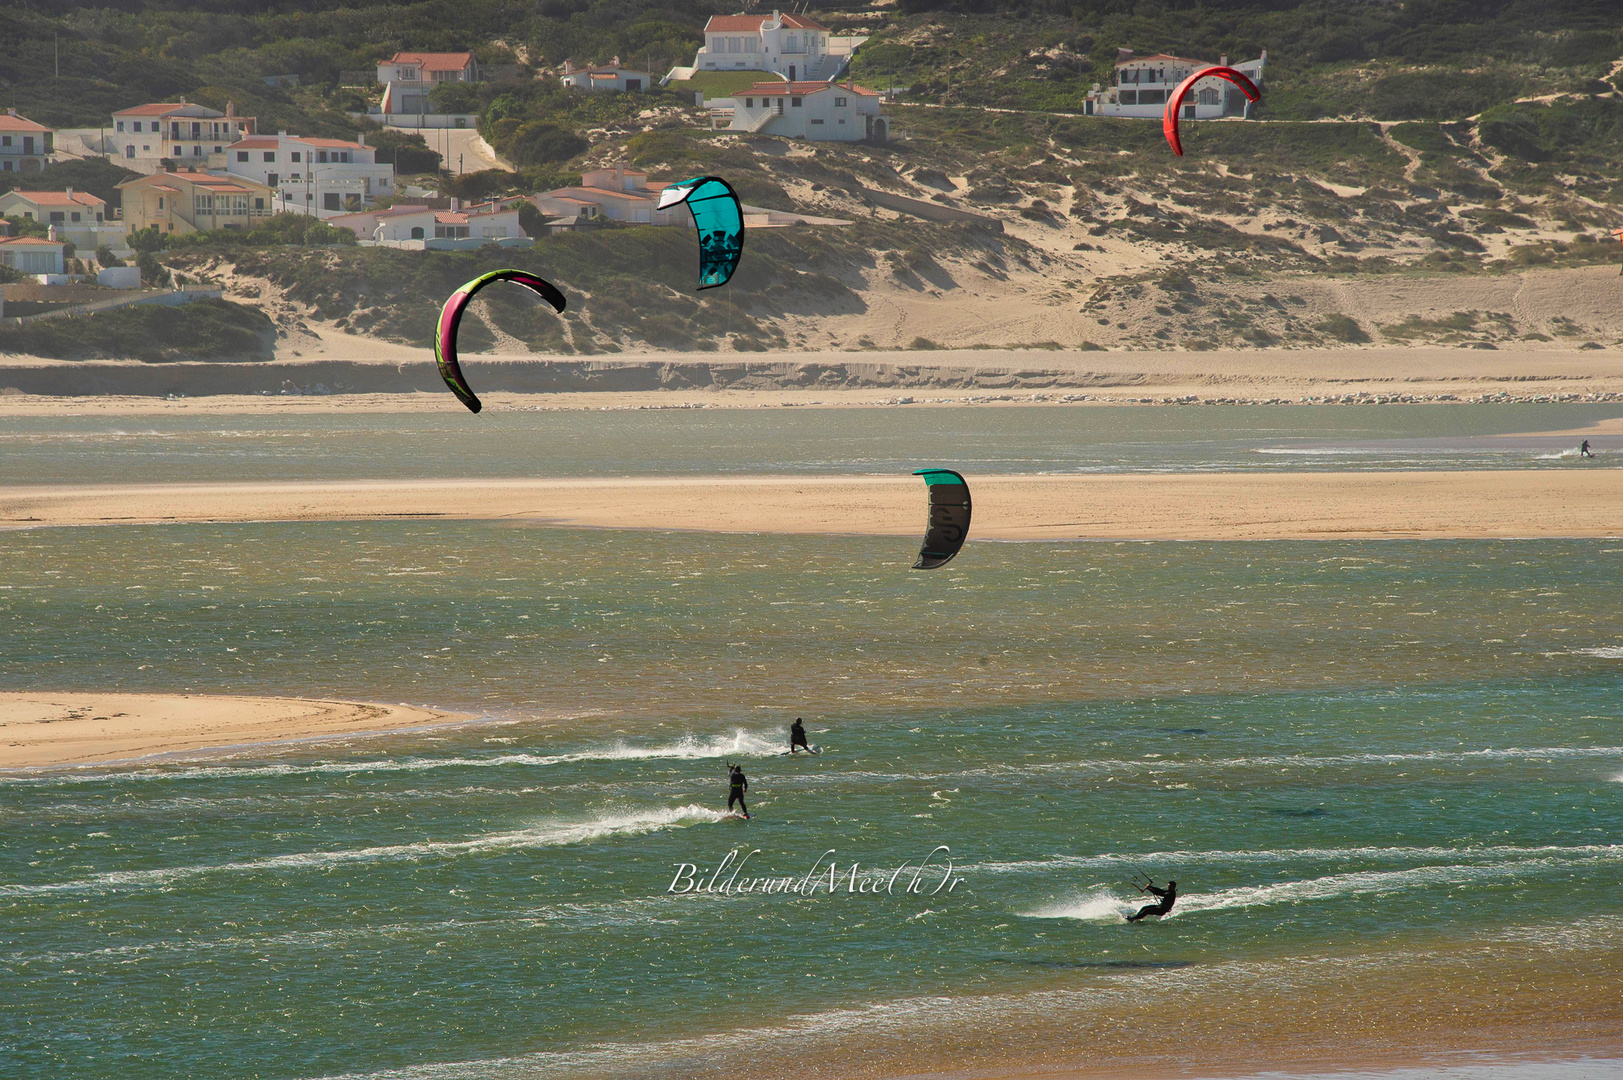 bilderundmeehr_portugal_beach_surfing